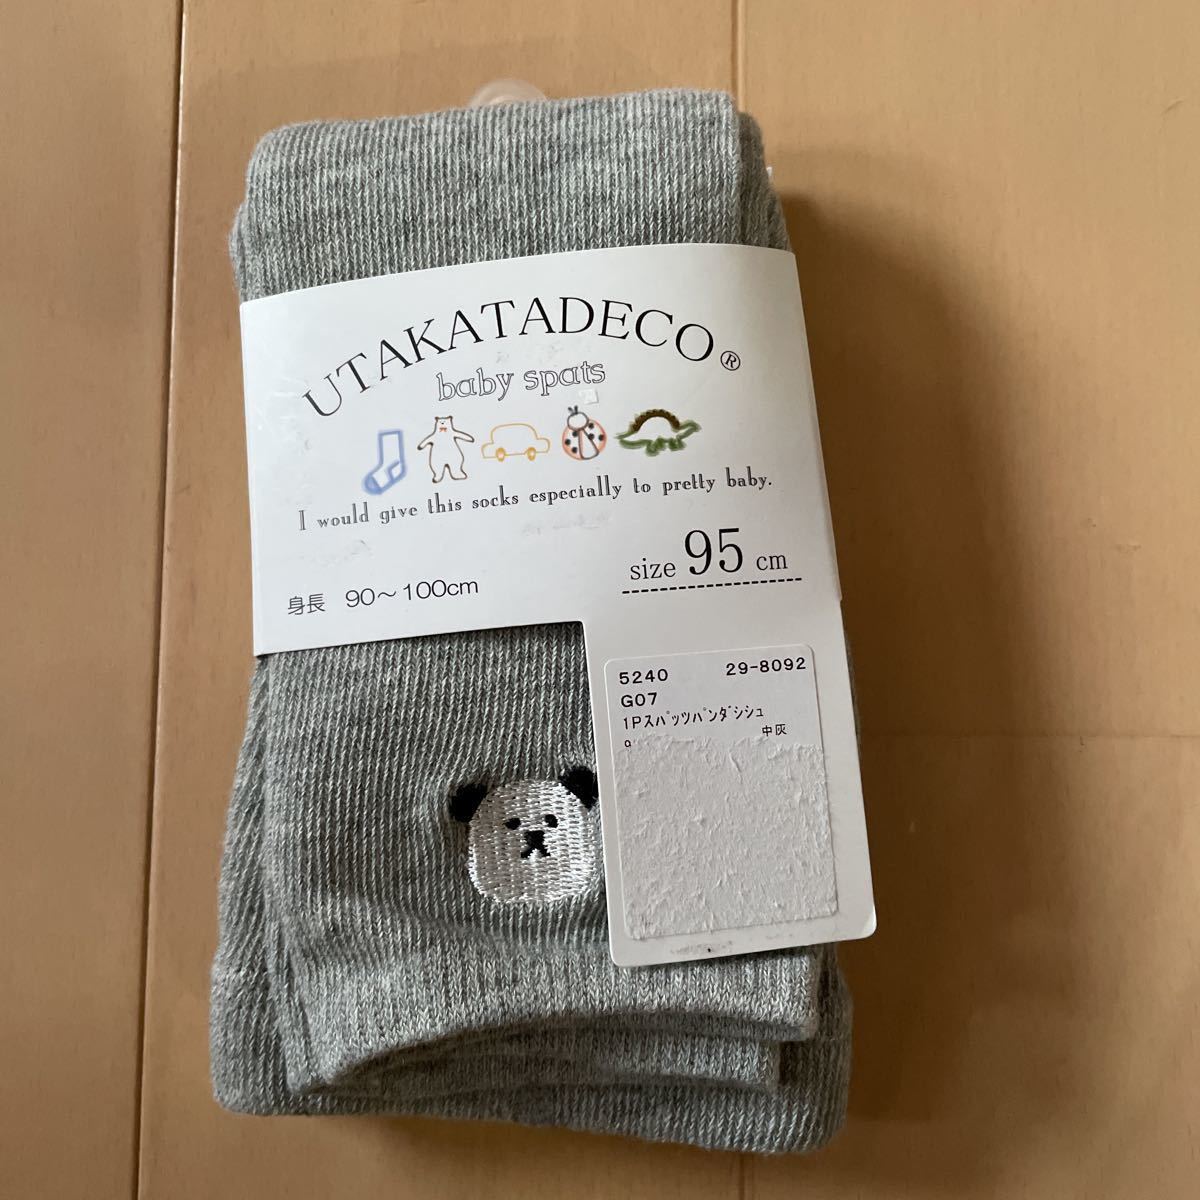  включая доставку новый товар детские рейтузы серый × Panda вышивка 95cm 90-100cm бесплатная доставка 